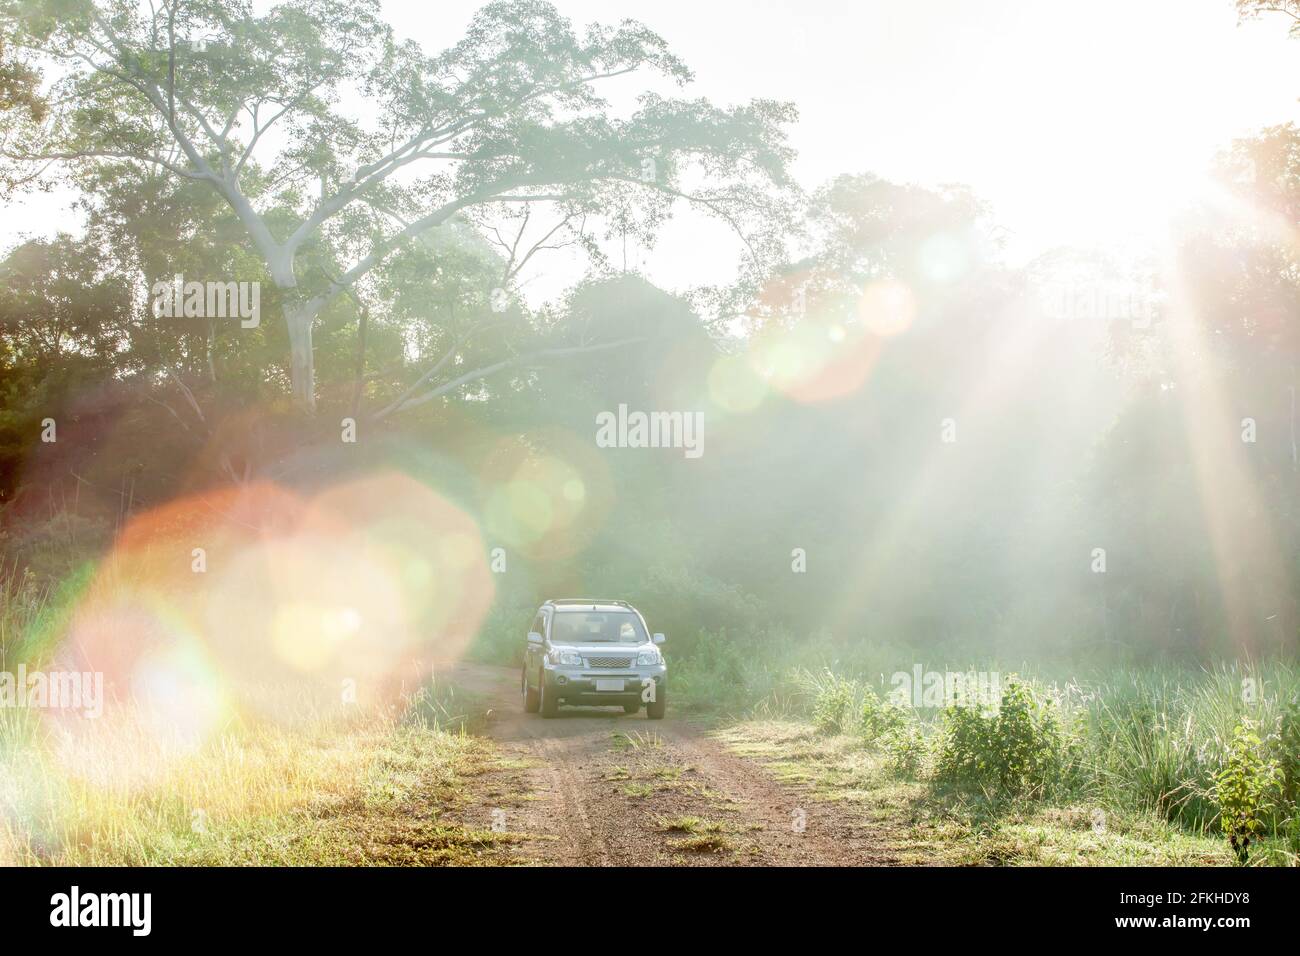 Erkunden Sie die Wildnis, den Sonnenaufgang, der durch wilde Bäume auf dem Grasland scheint, und das silberne SUV-Auto auf der unbefestigten Straße. Stockfoto